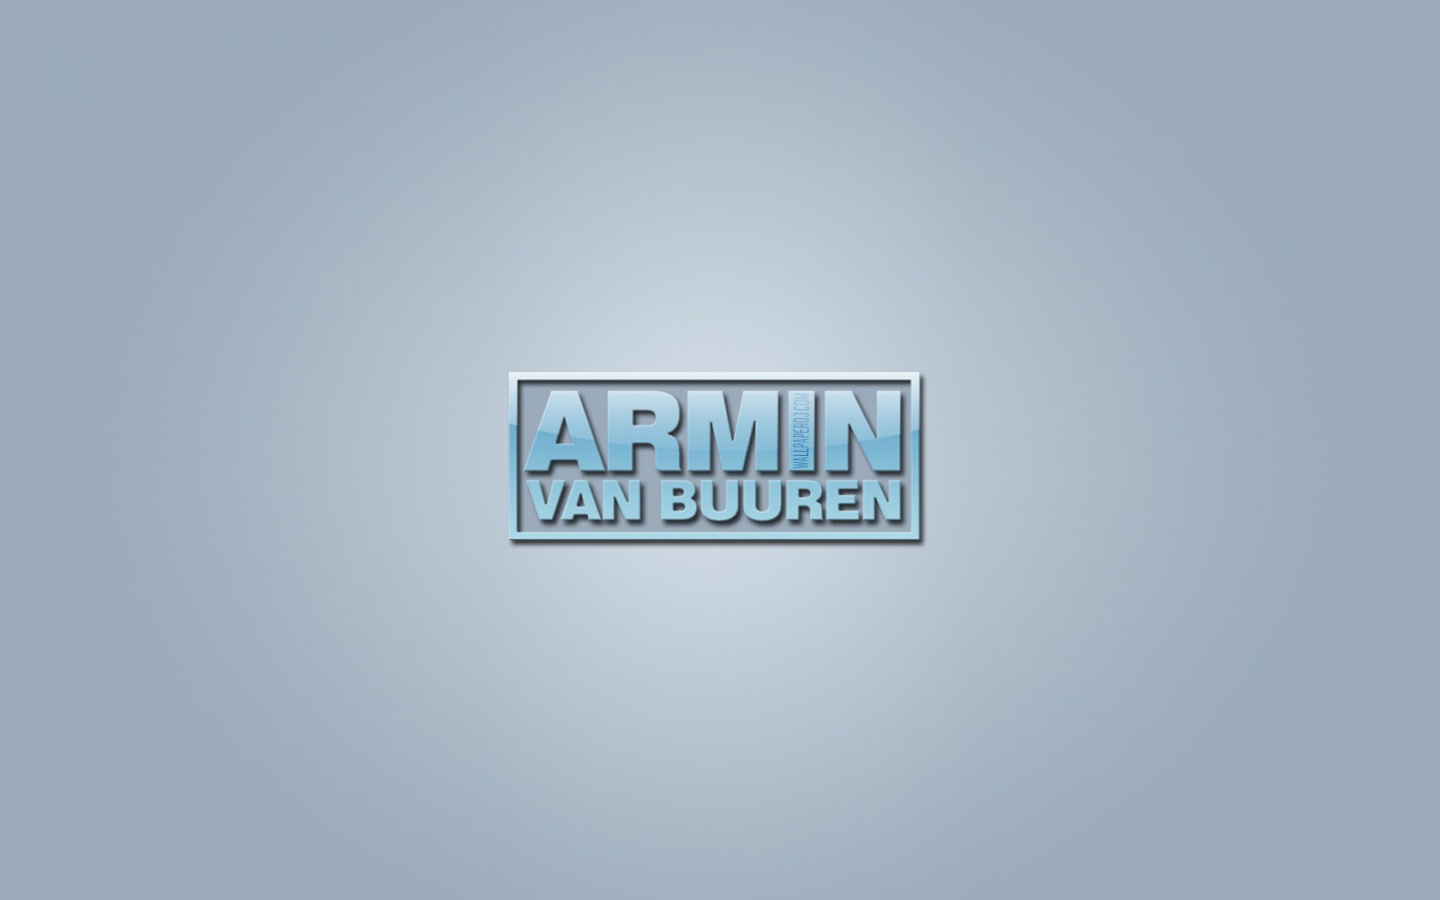 Armin Van Buuren logo HD and Wide Wallpapers